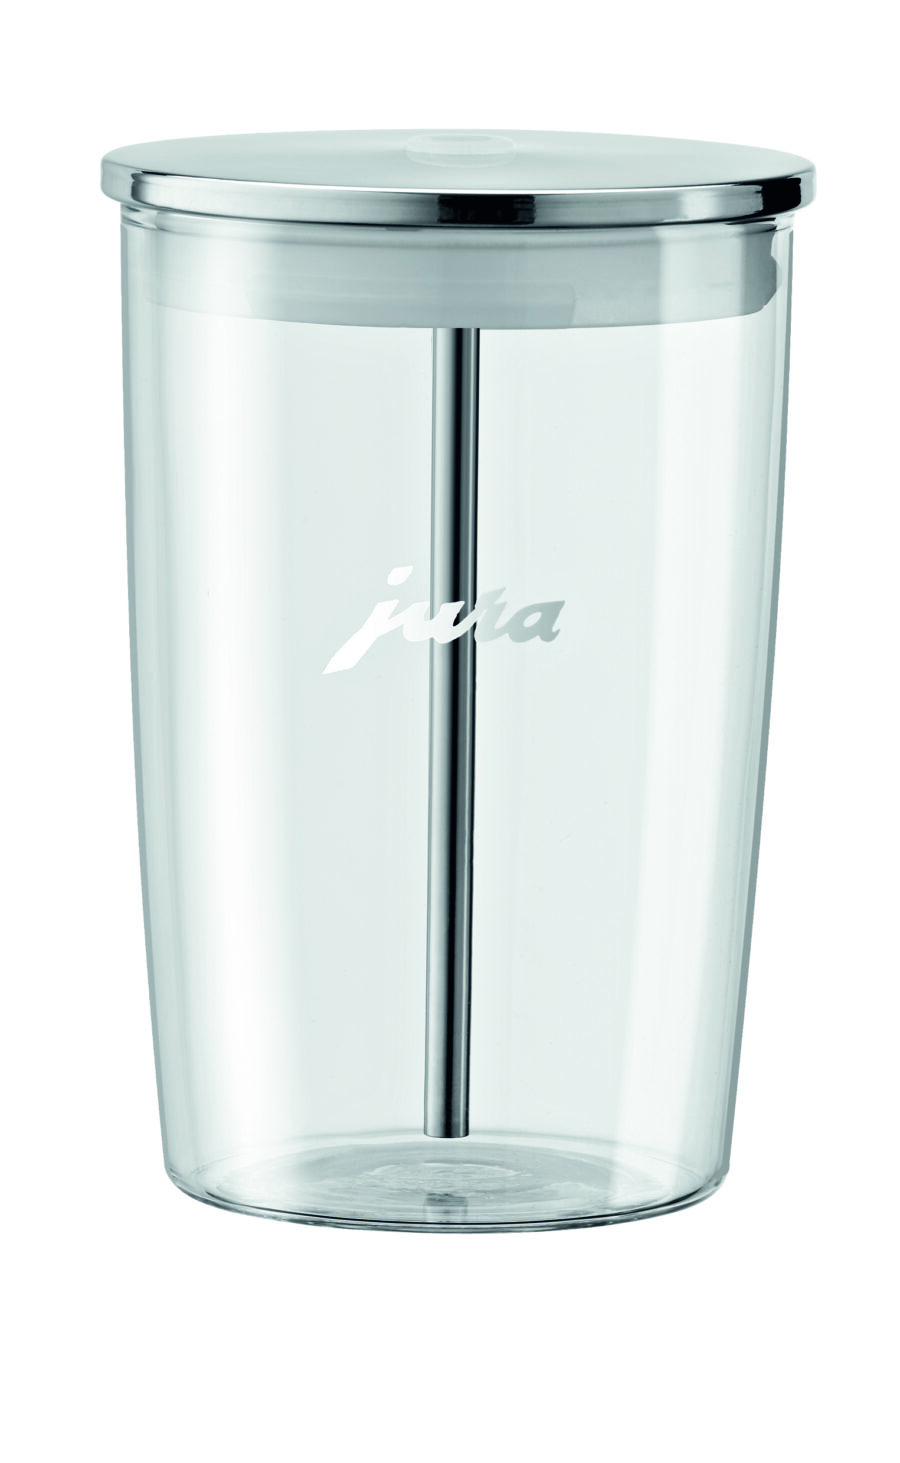 Biały szklany pojemnik na mleko do ekspresu JURA.